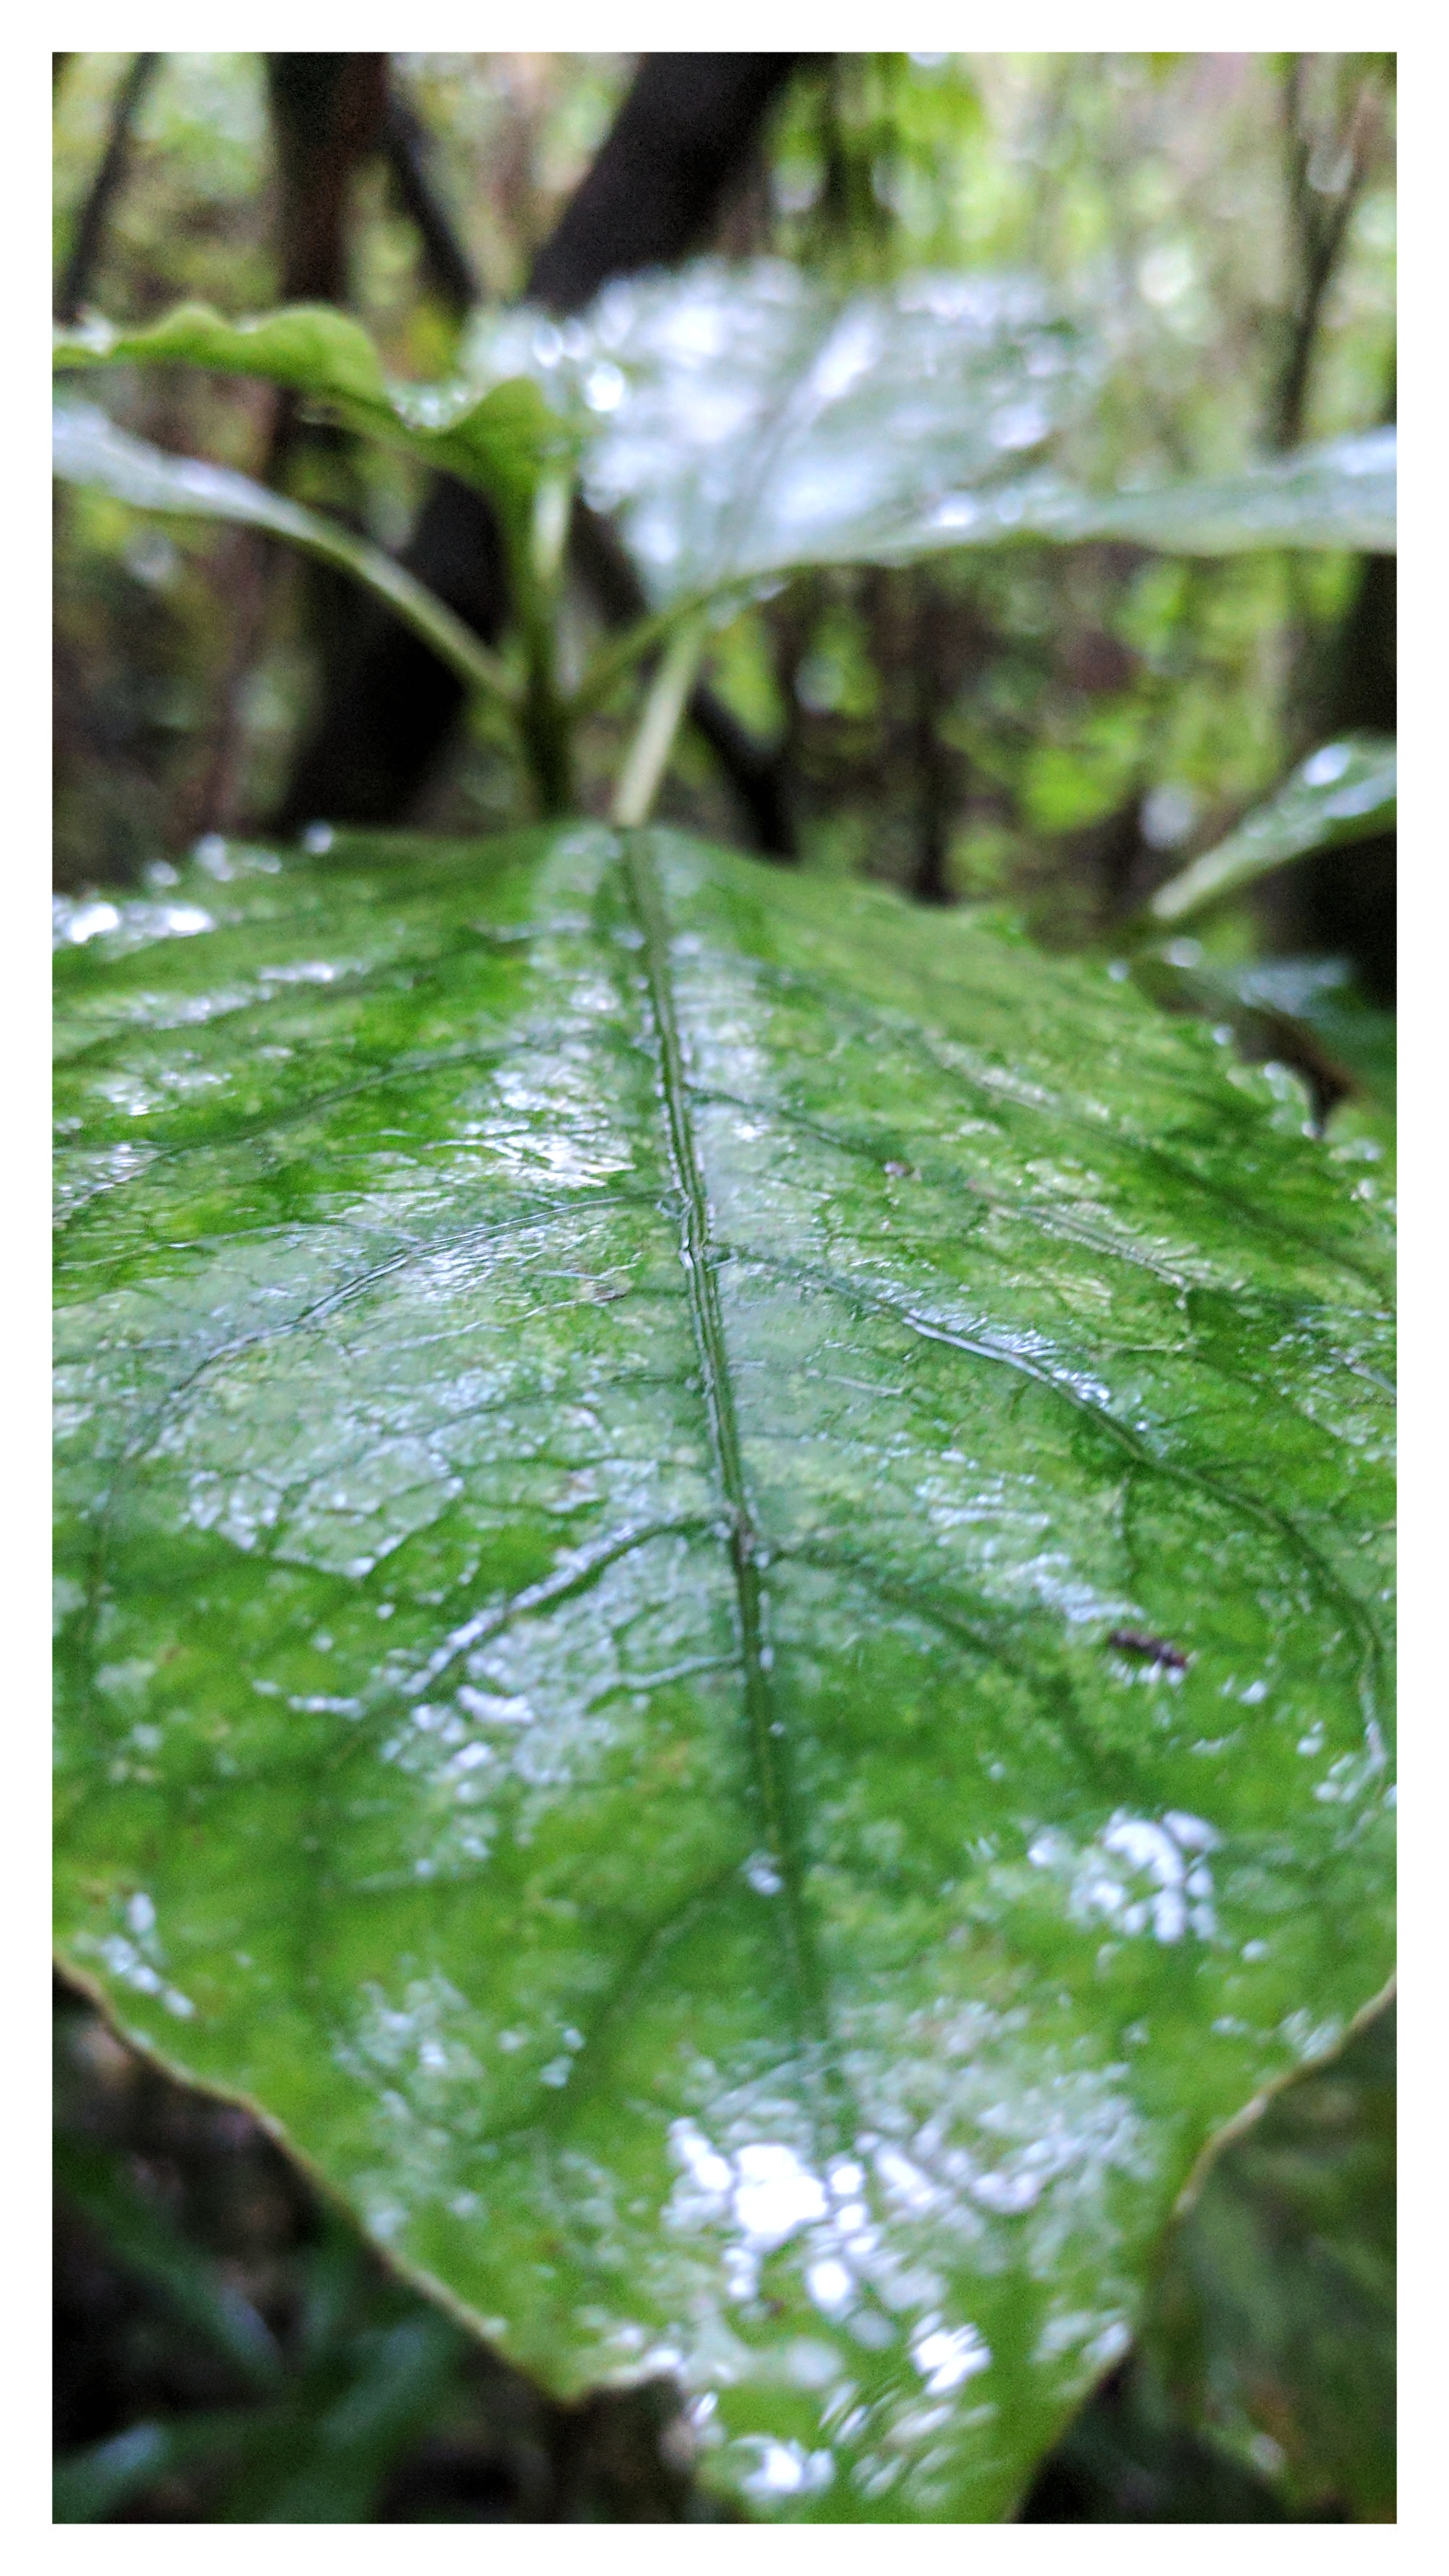 Wet leaf in a rain shower (Aotearoa New Zealand)